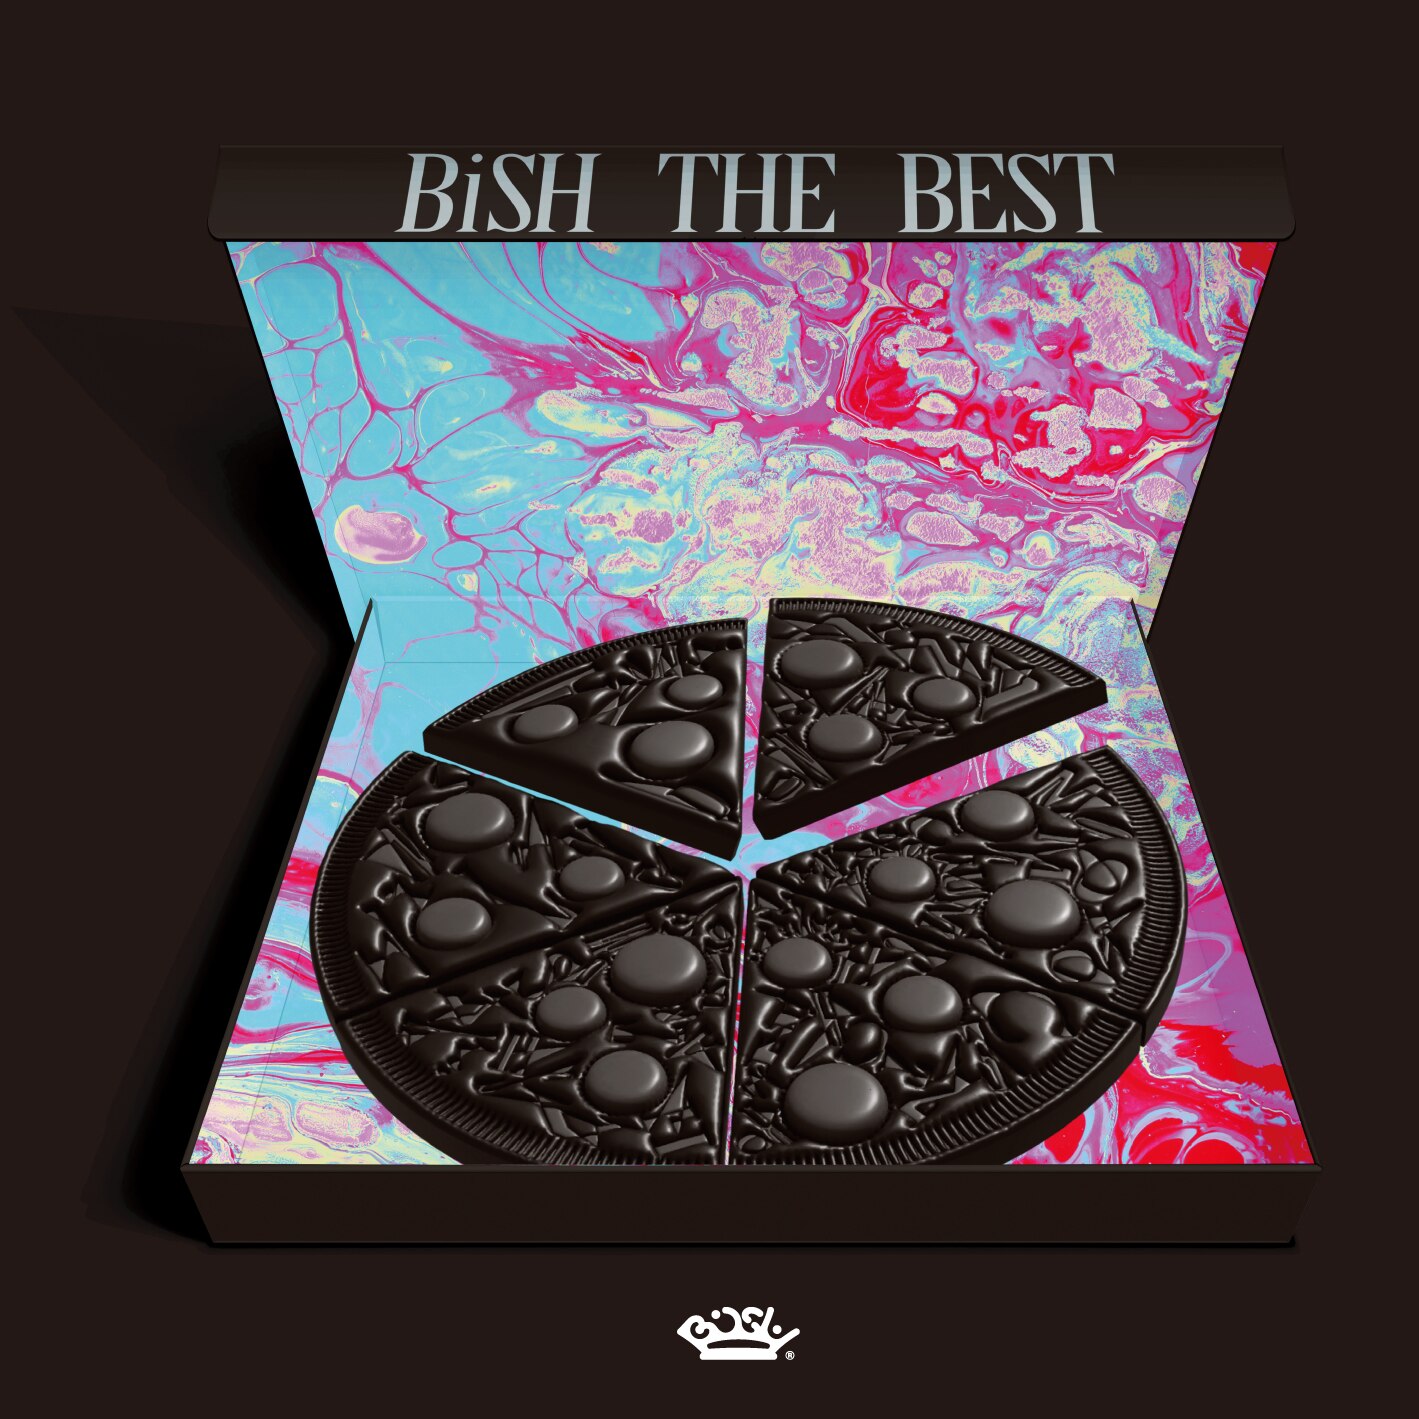 BiSH THE BEST【DVD盤 2CD+1DVD】